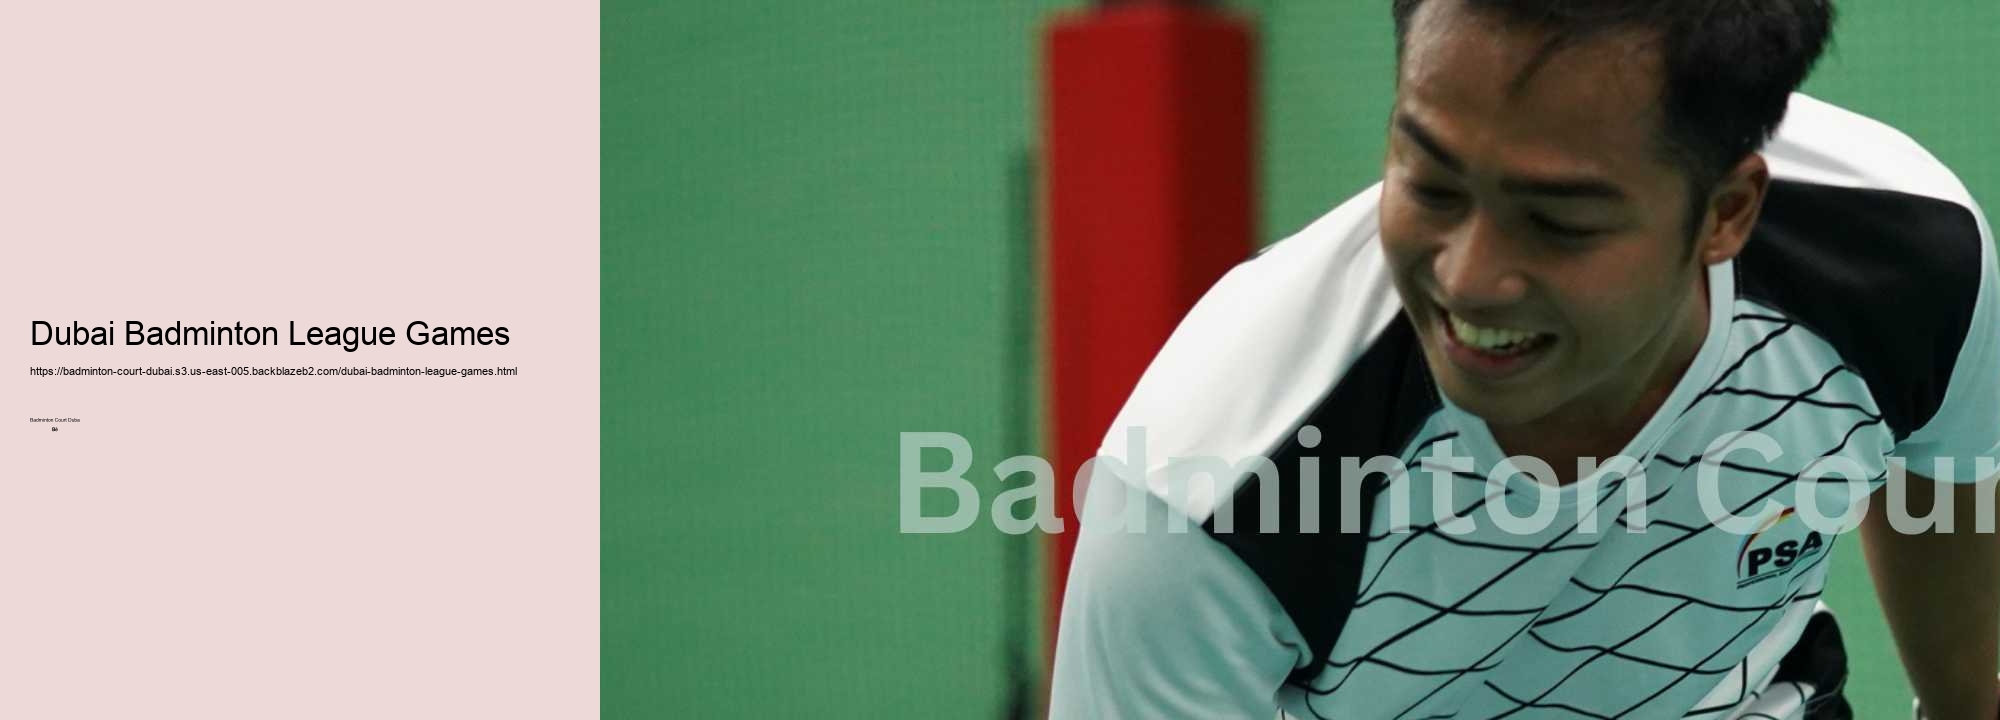 Dubai Badminton League Games